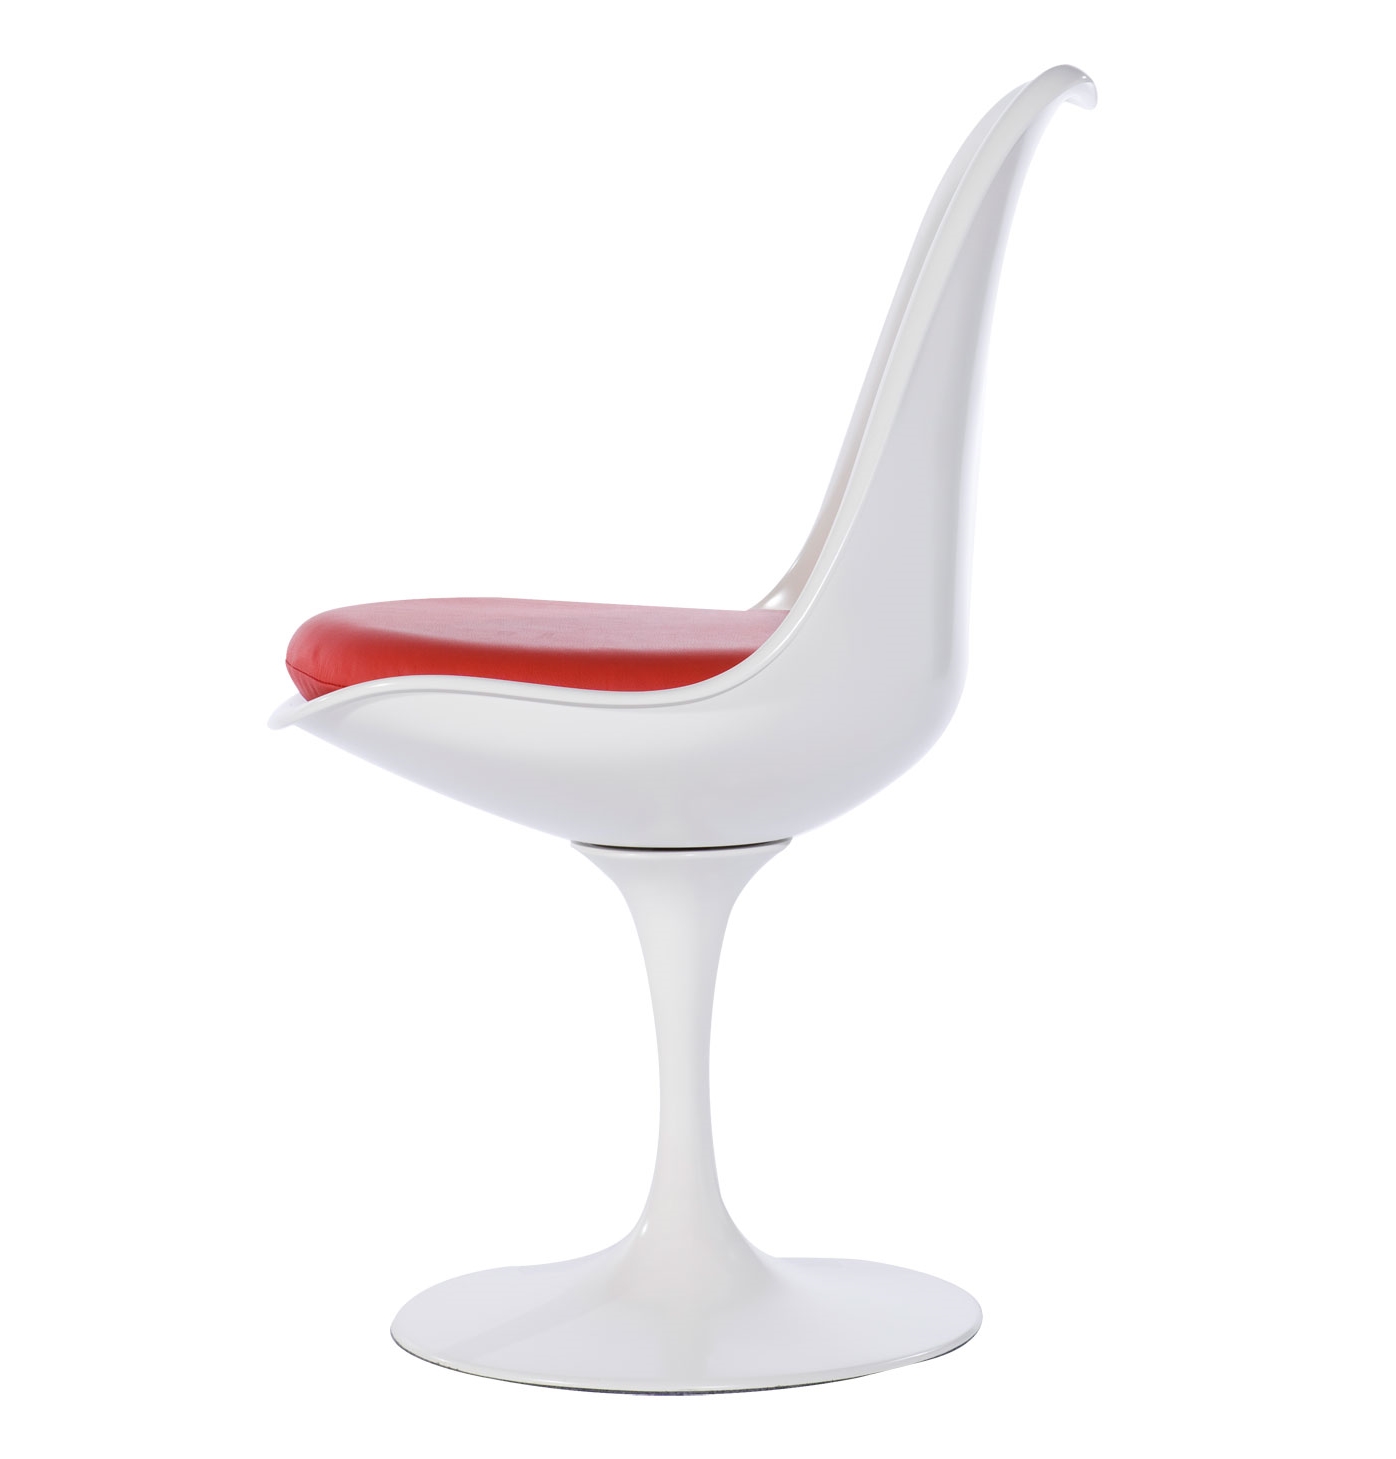 A cadeira Saarinen é um clássico que todos nós amamos